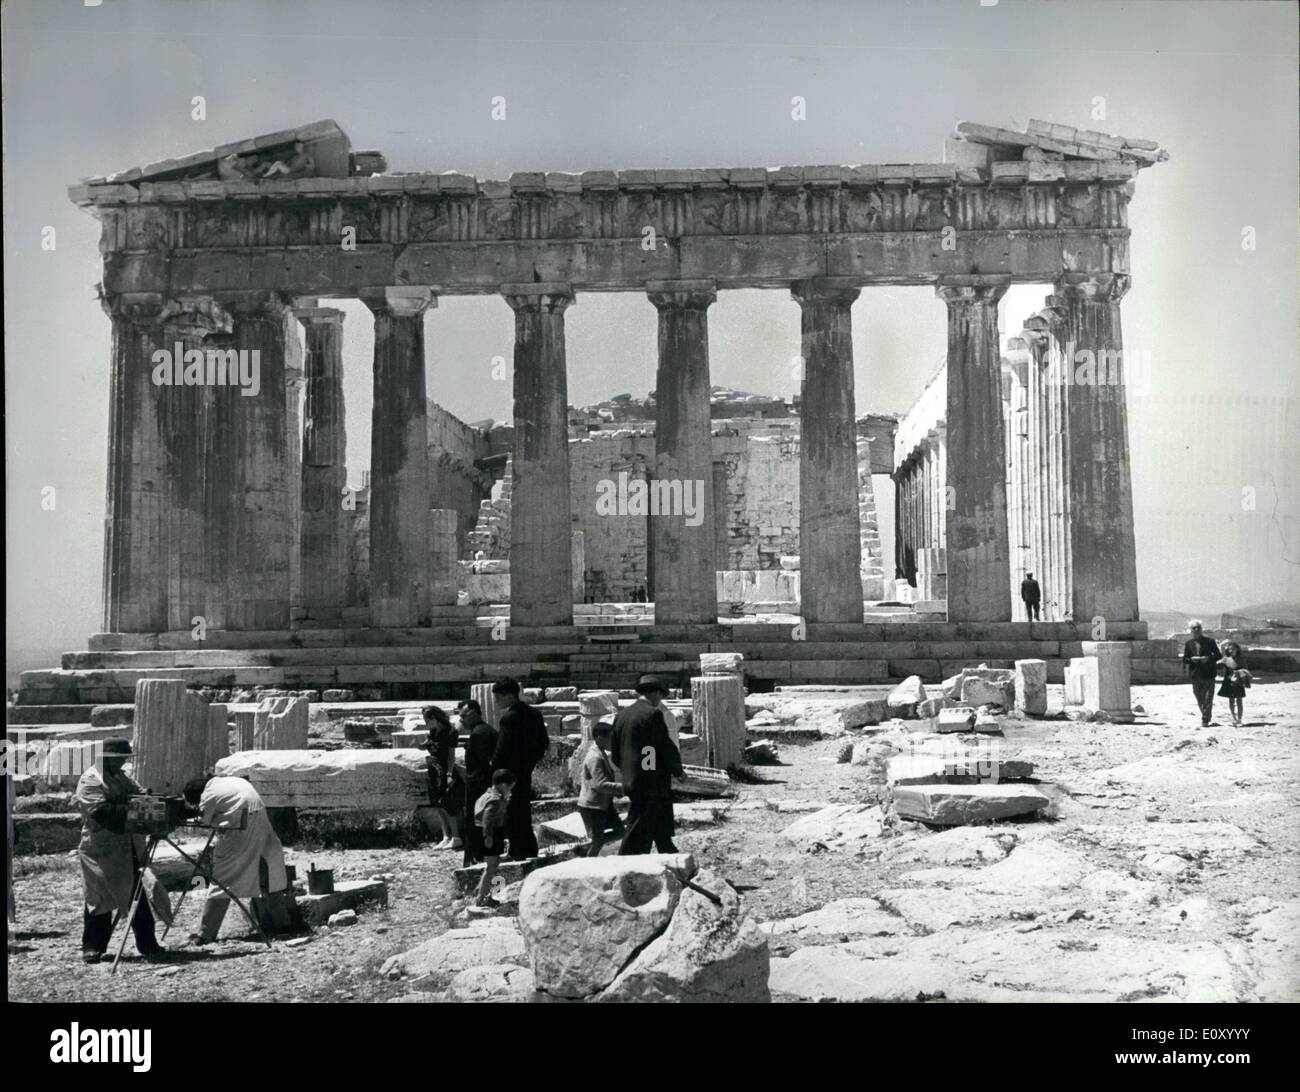 10 févr. 02, 1968 - Les colonnes du Parthénon en danger d'effondrement. : En partie à cause de l'acier rouillé, prend en charge les colonnes de marbre du Parthénon à Athènes, sont en danger d'effondrement. Avant la Première Guerre mondiale, alors que l'Amirauté en croisière enchanteresse yacht, Sir Winston Churchill a été choqué de voir les colonnes gisant sur le sol comme ils l'avaient été depuis des années. Il a même considéré comme l'envoi d'une partie de l'bluejackets,qui pensait-il, aurait bientôt à la verticale. Le Gouvernement grec, pas beaucoup d'années plus tard, a pris l'avis de Sir Winston. Maintenant, les colonnes sont en danger de s'effondrer encore une fois Banque D'Images